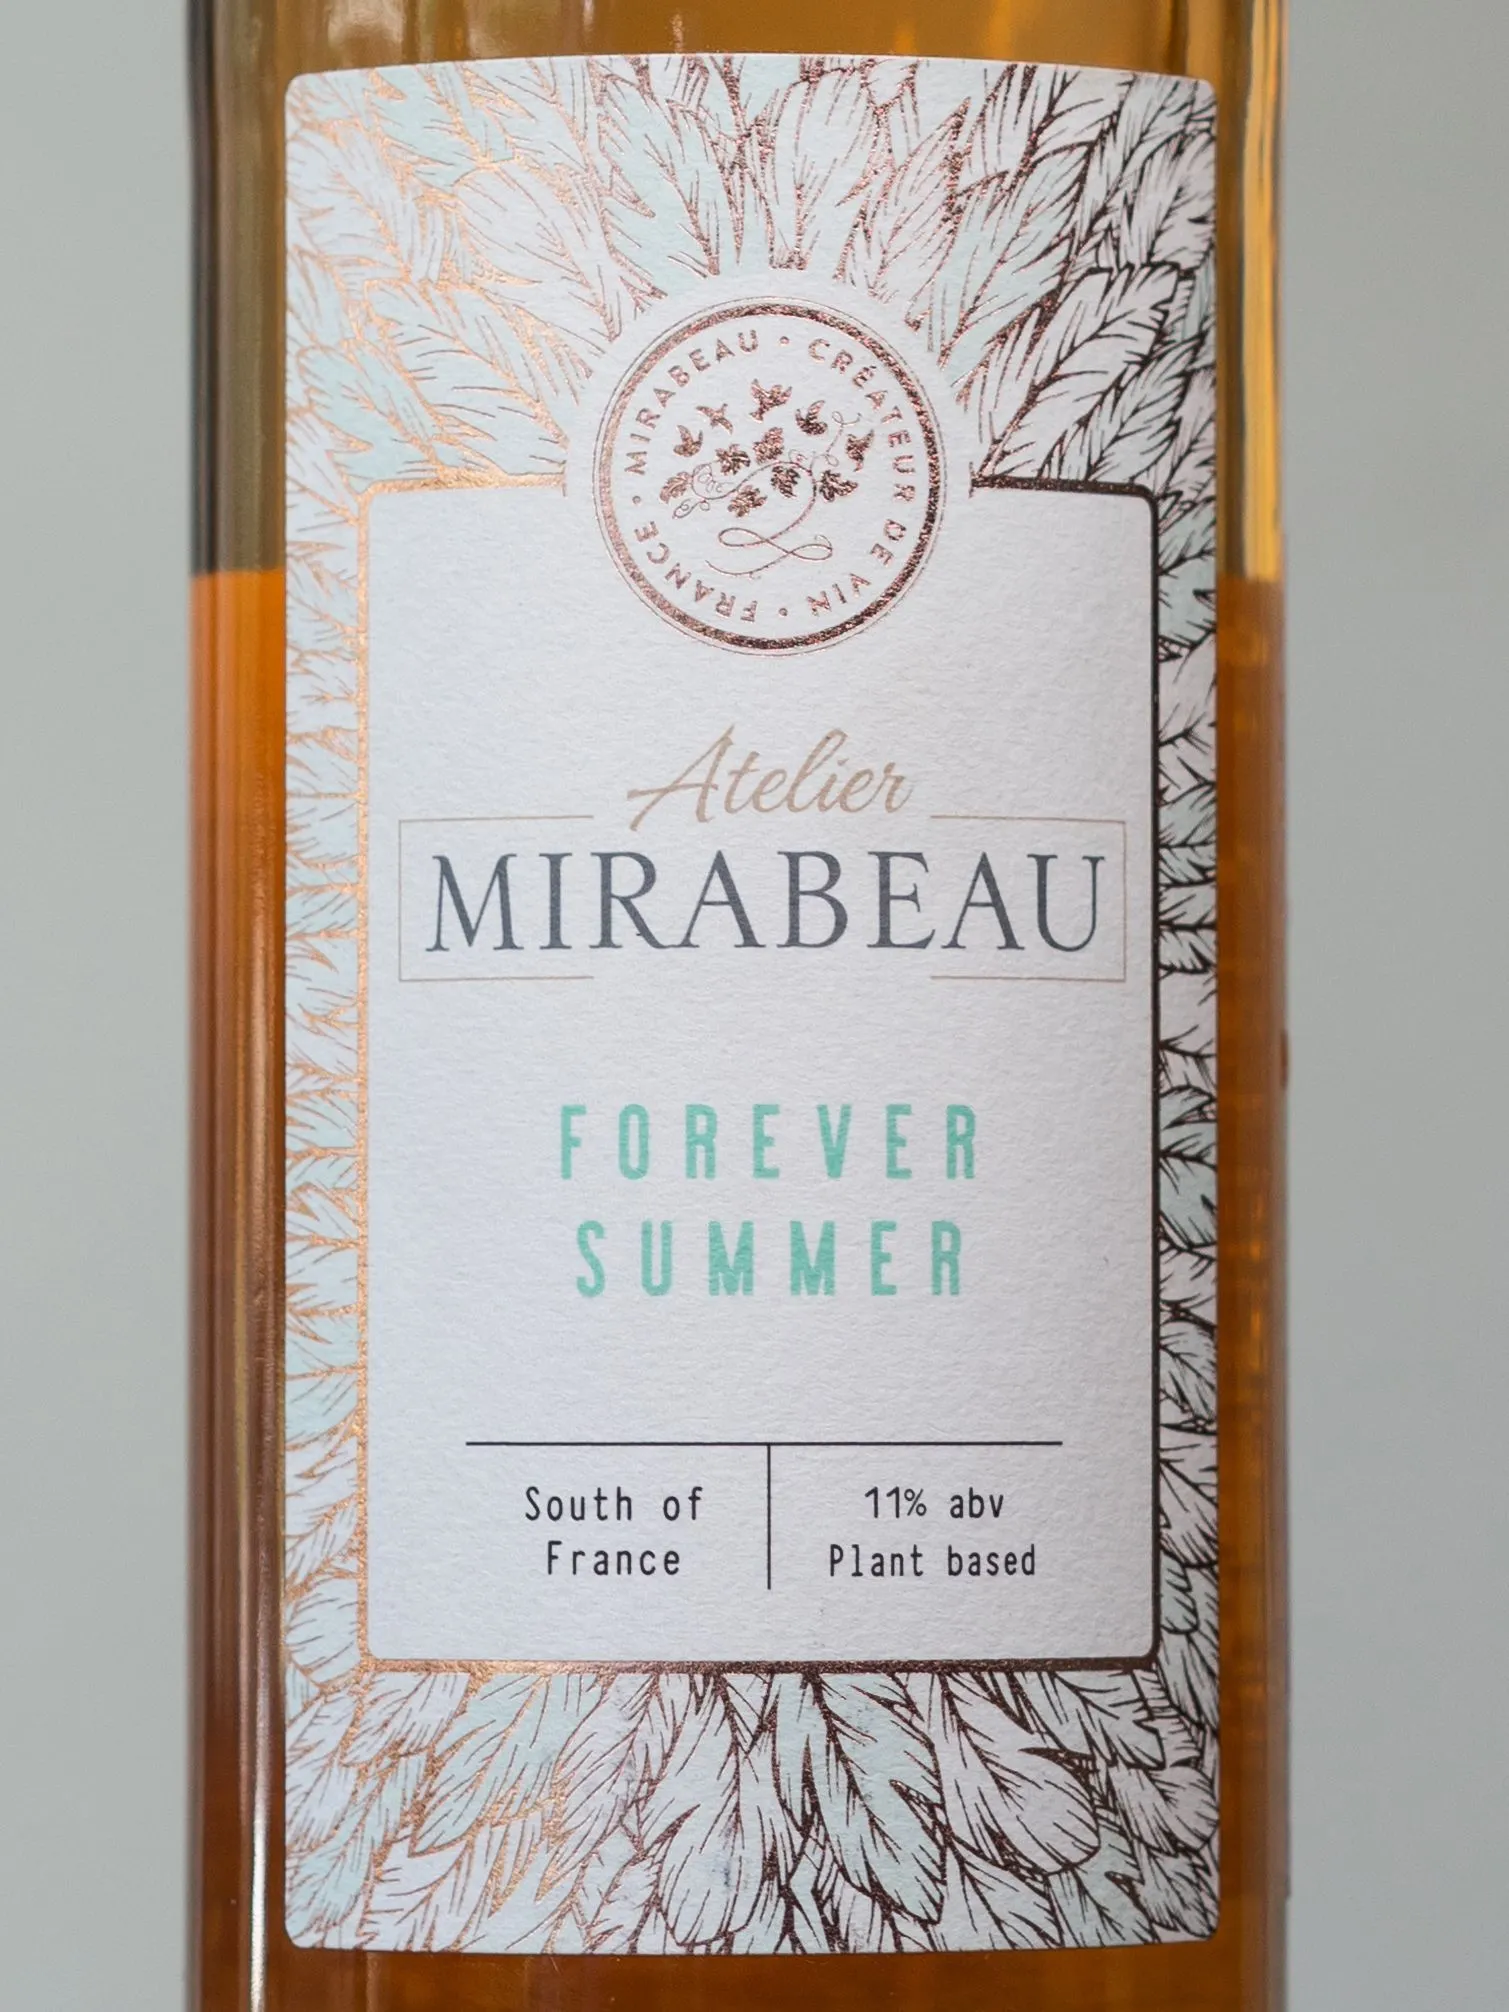 Вино Mirabeau Atelier Forever Summer / Ателье Мирабо Форевер Саммер